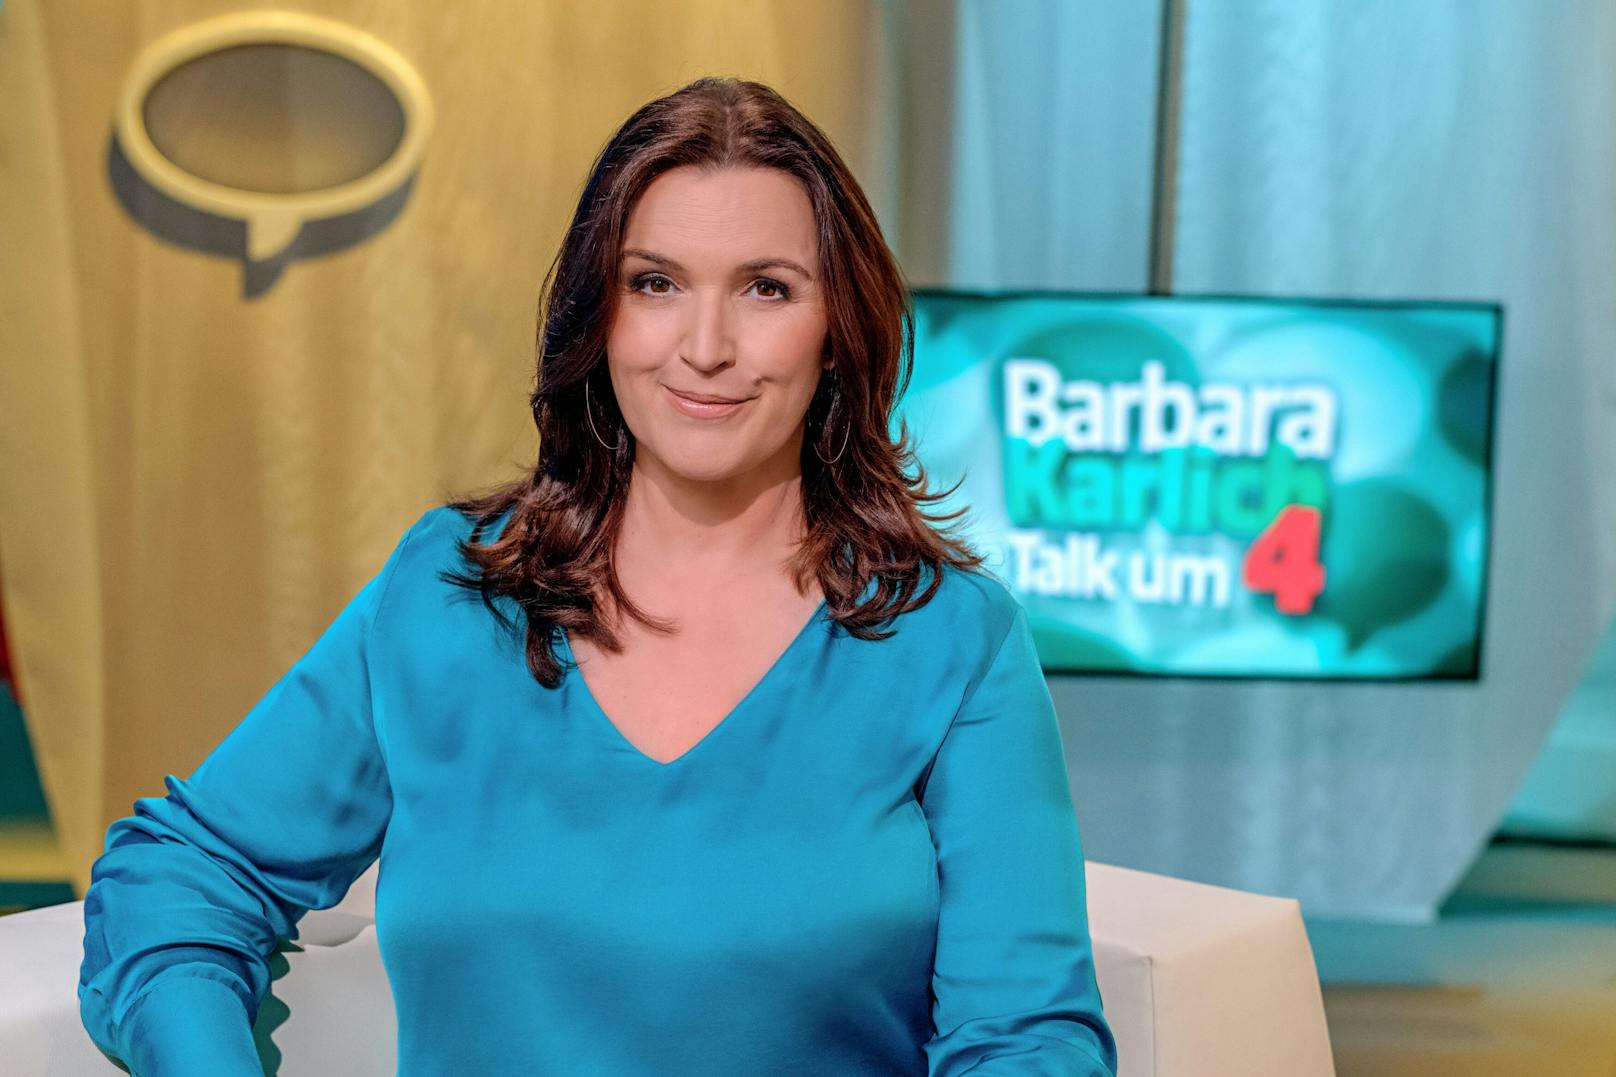 Die "Barbara Karlich Show" heißt nun "Barbara Karlich - Talk um 4".